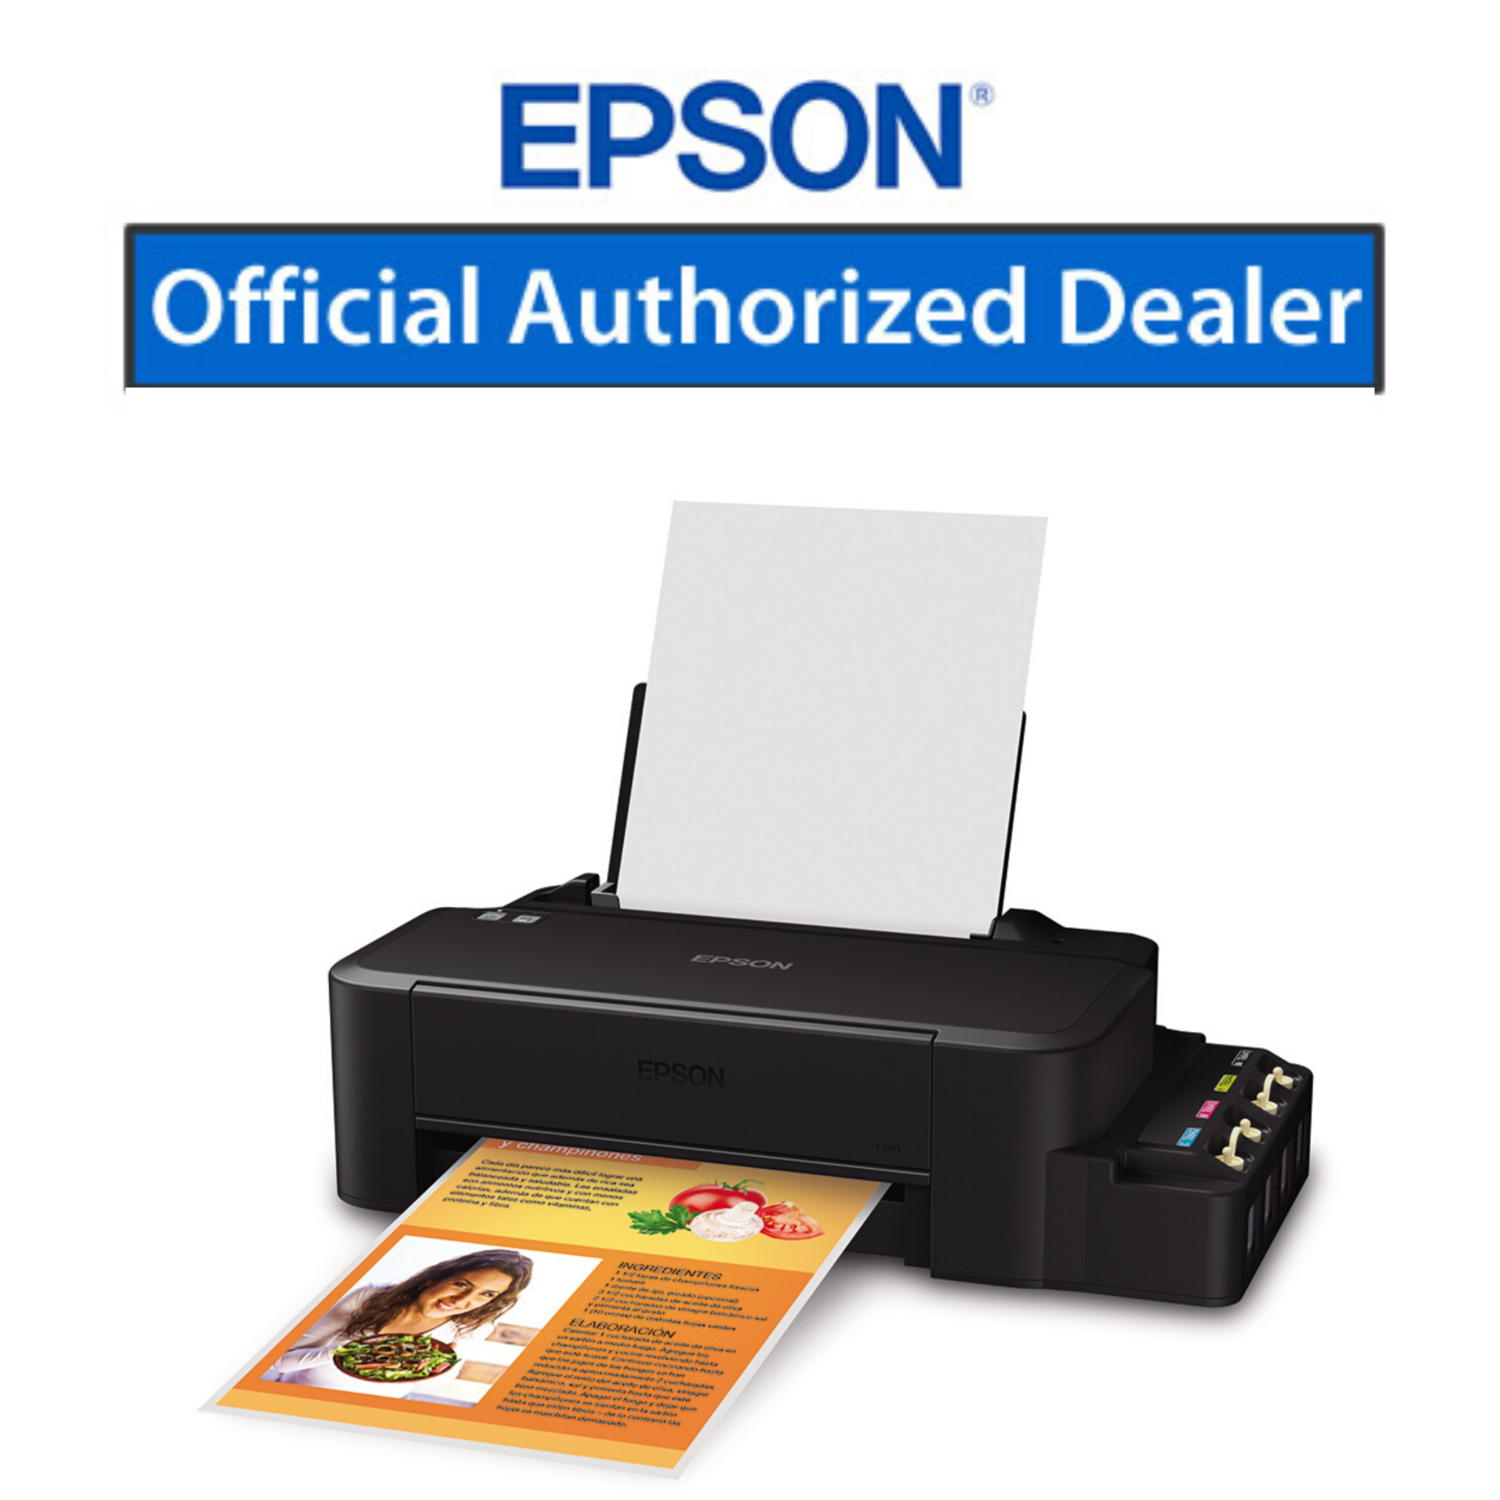 Принтер для распечатки документов. Принтер Эпсон l120. Принтер Epson l121. Принтер Эпсон л 120. Принтер Epson ECOTANK l121.